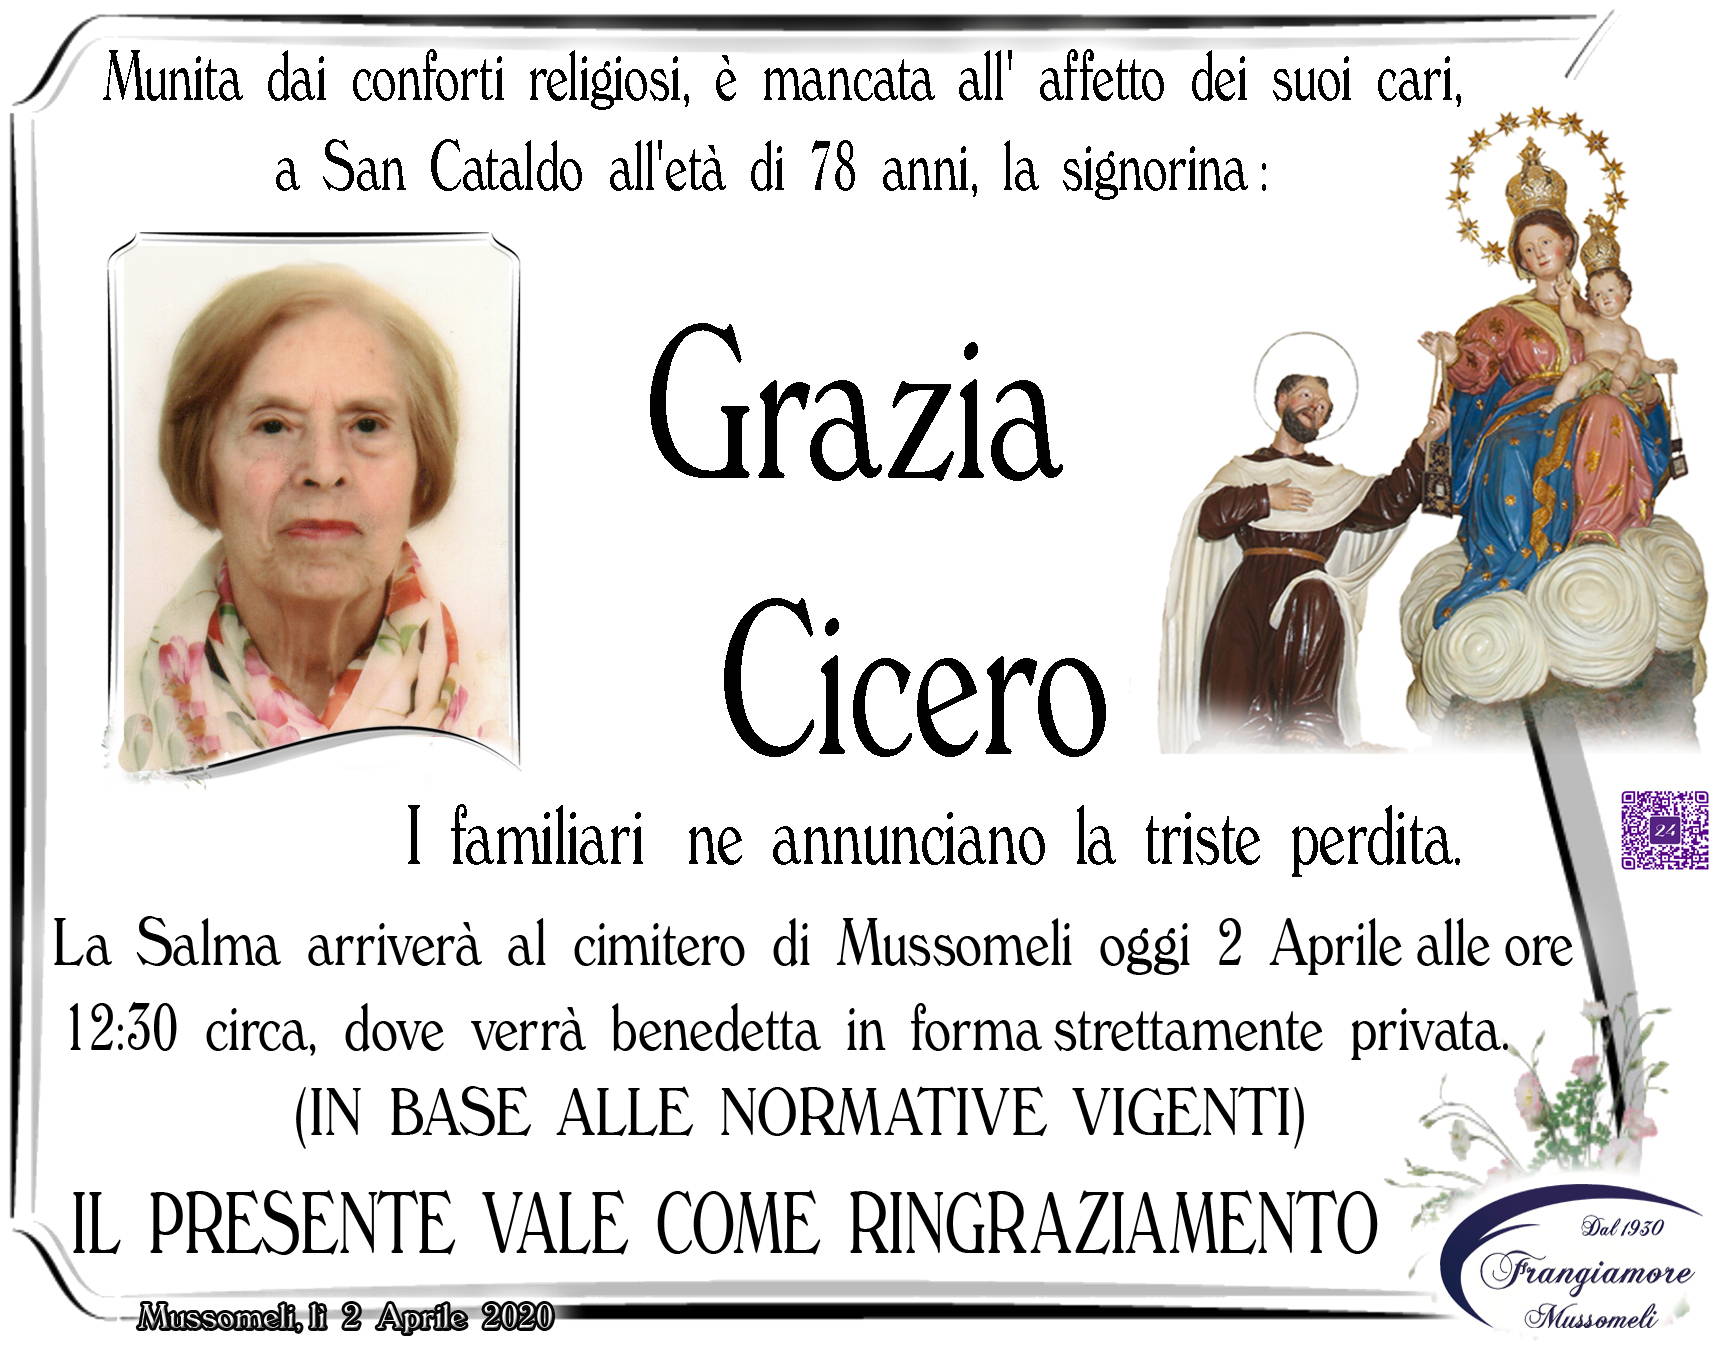 Grazia Cicero